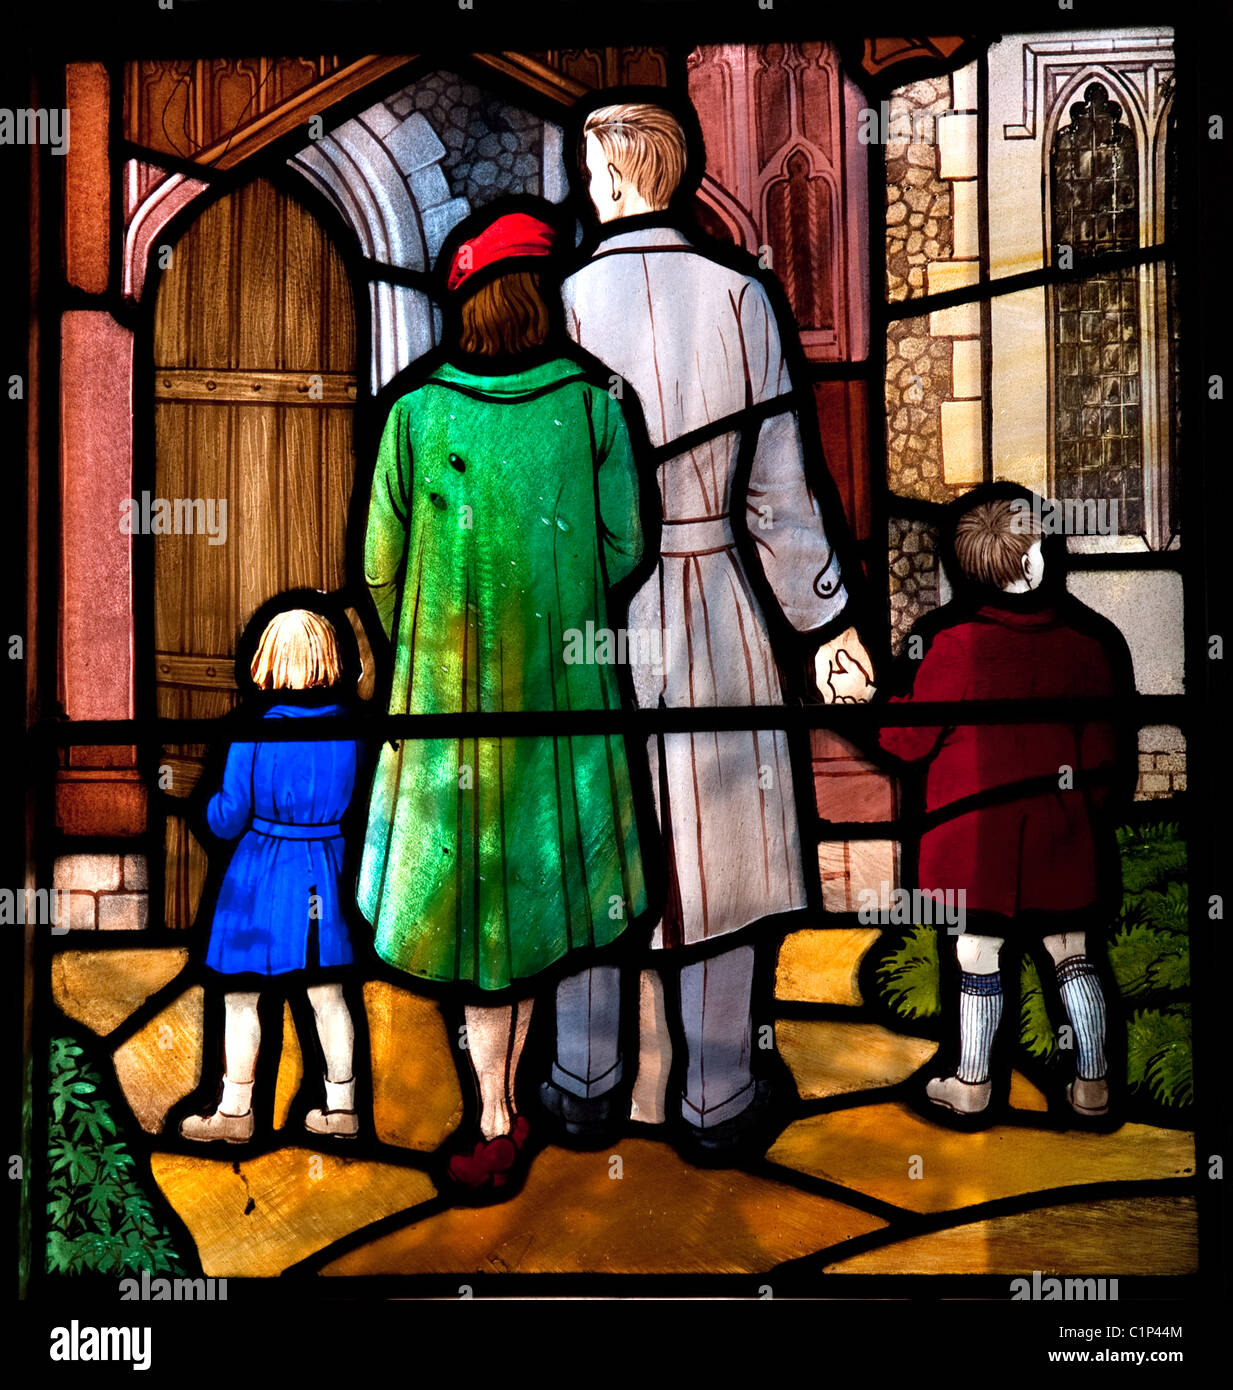 Détail de vitrail montrant une famille aller à l'église All Saints Church, village Stock, Essex, UK Banque D'Images